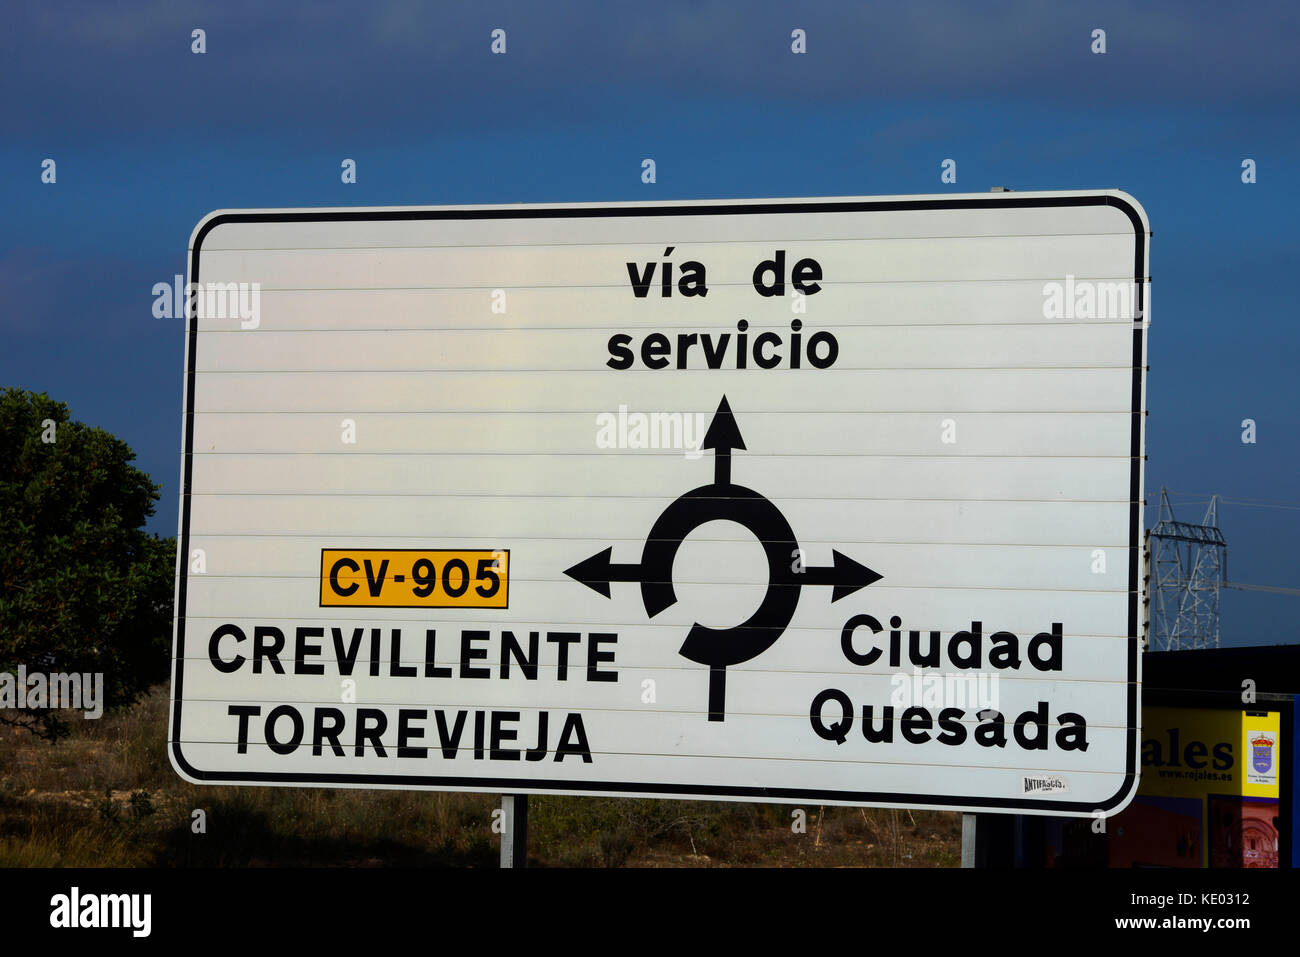 Spanisches Straßenschild für CV-905 Torrevieja Crevillente Via de Servicio Zufahrtsstraße Ciudad Quesada. Kreisverkehr. Reiseziele in Spanien Stockfoto